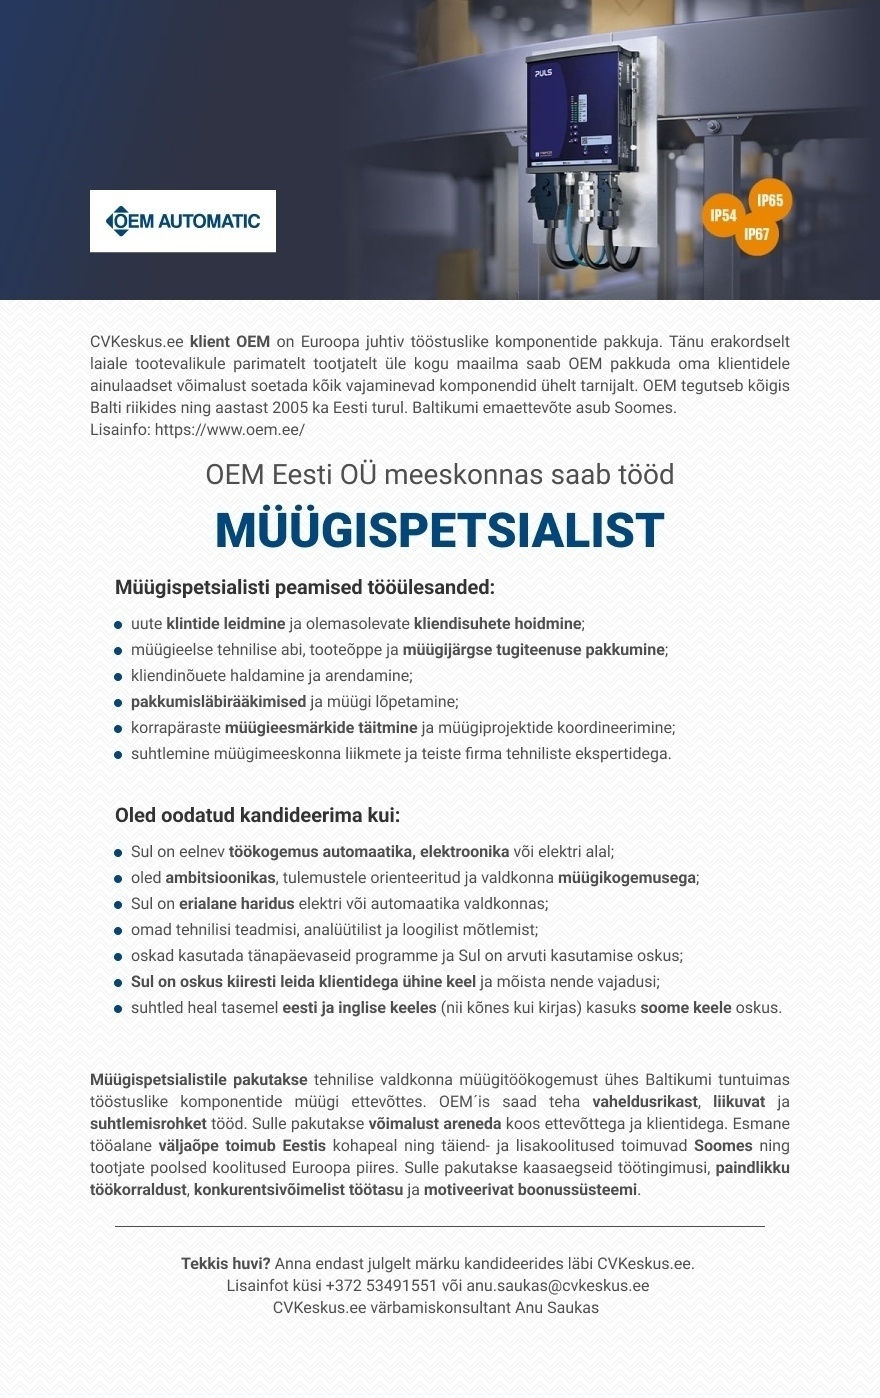 OEM Eesti OÜ Müügispetsialist